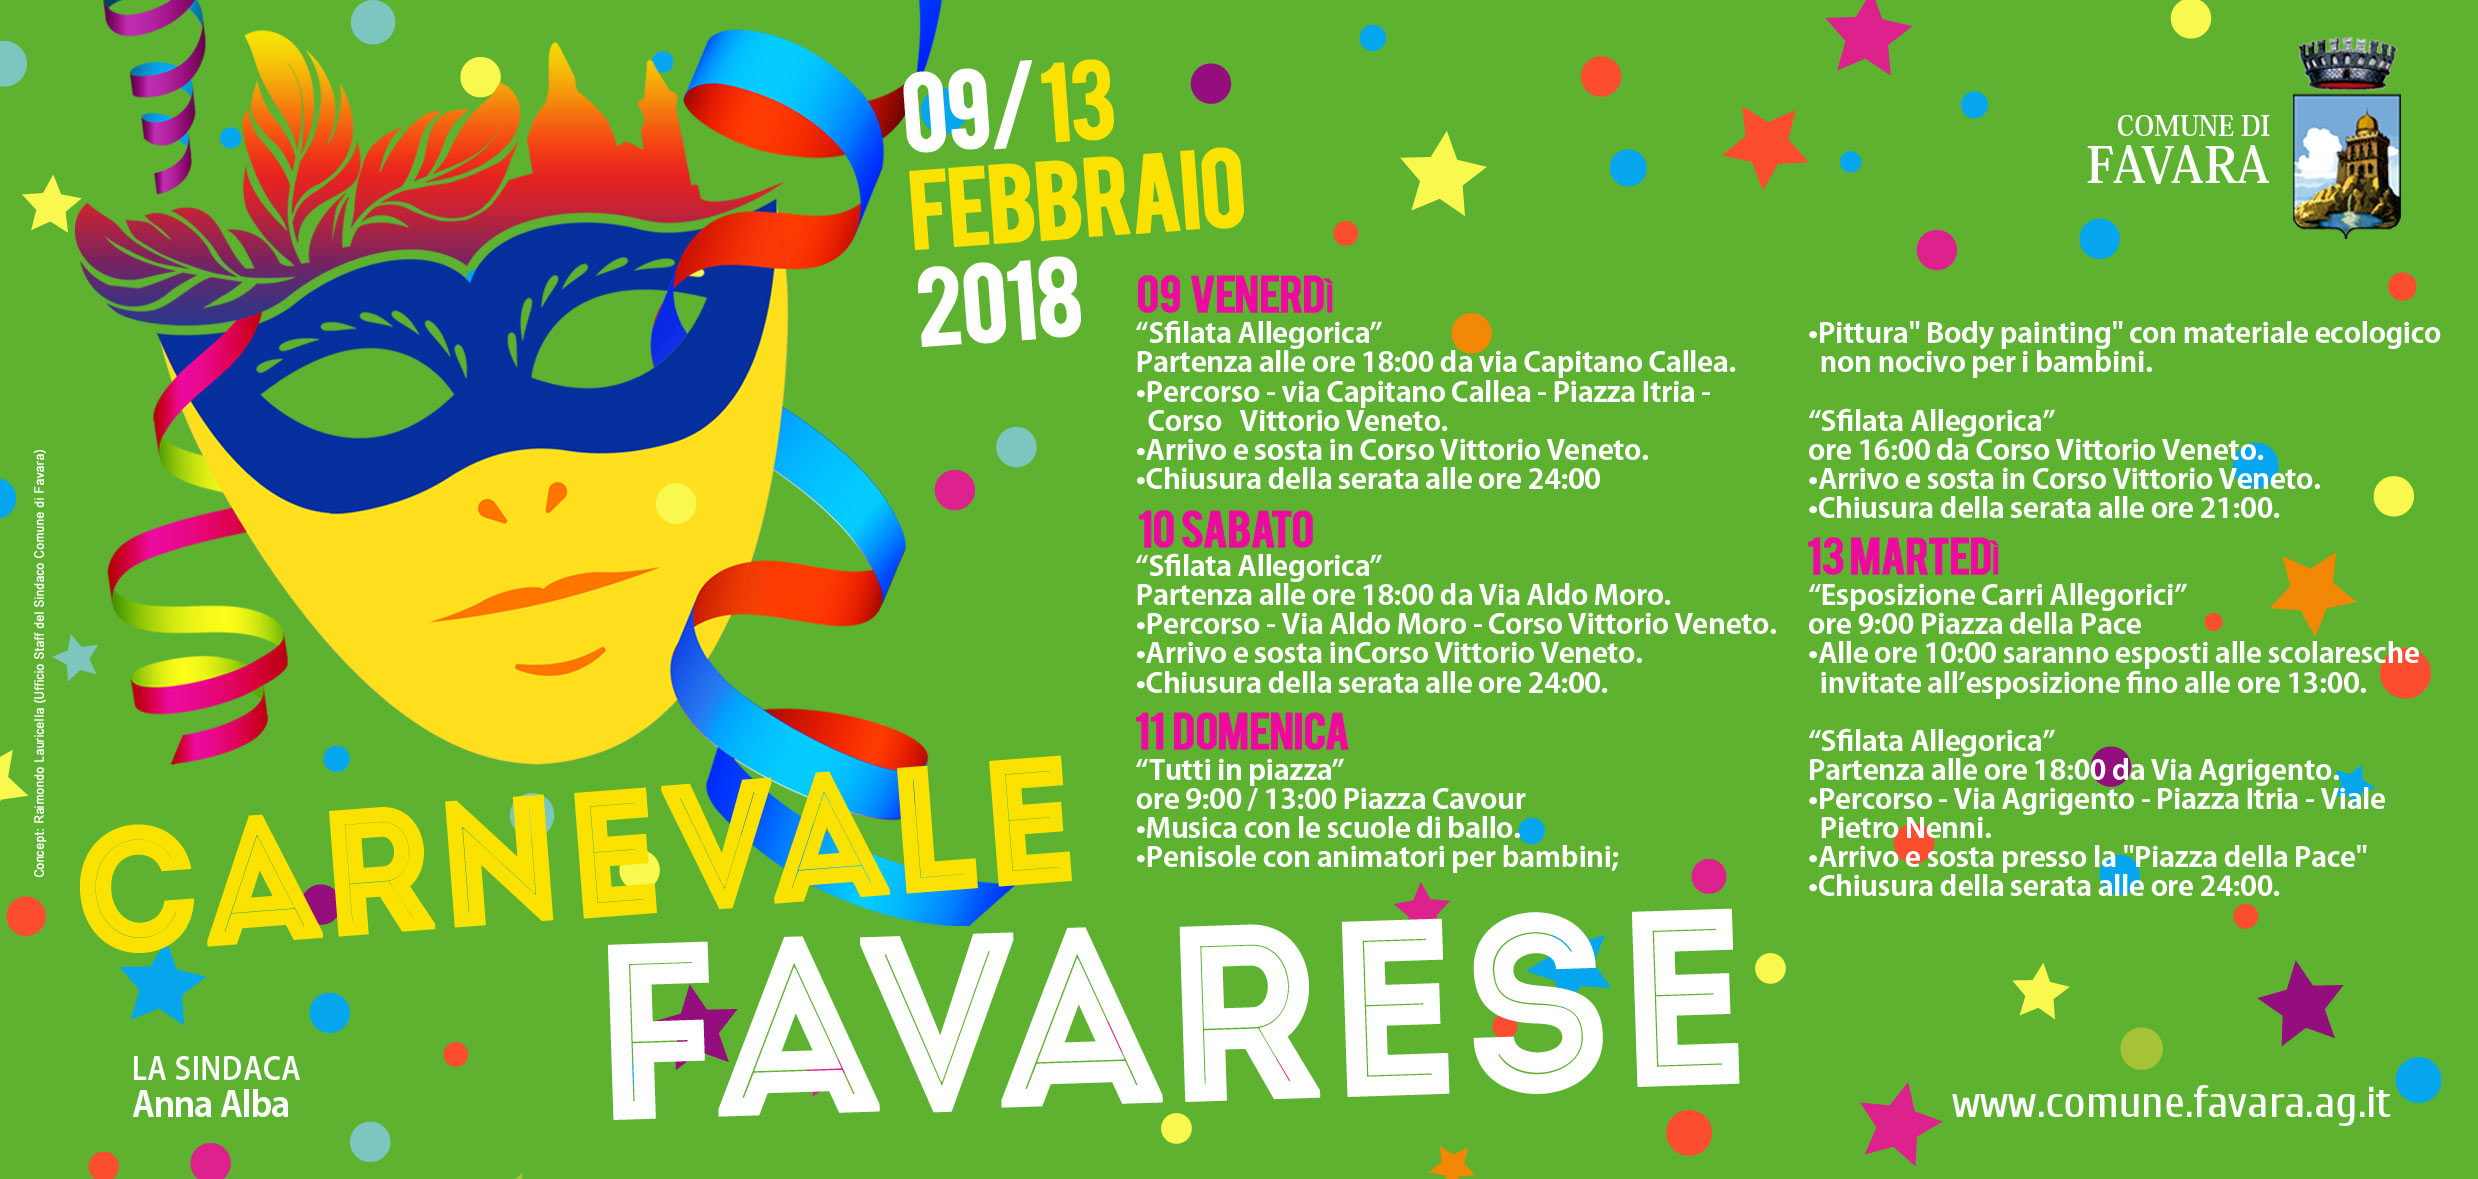 Carnevale 2018 a Favara. Sabato scorso le premiazioni e i riconoscimenti